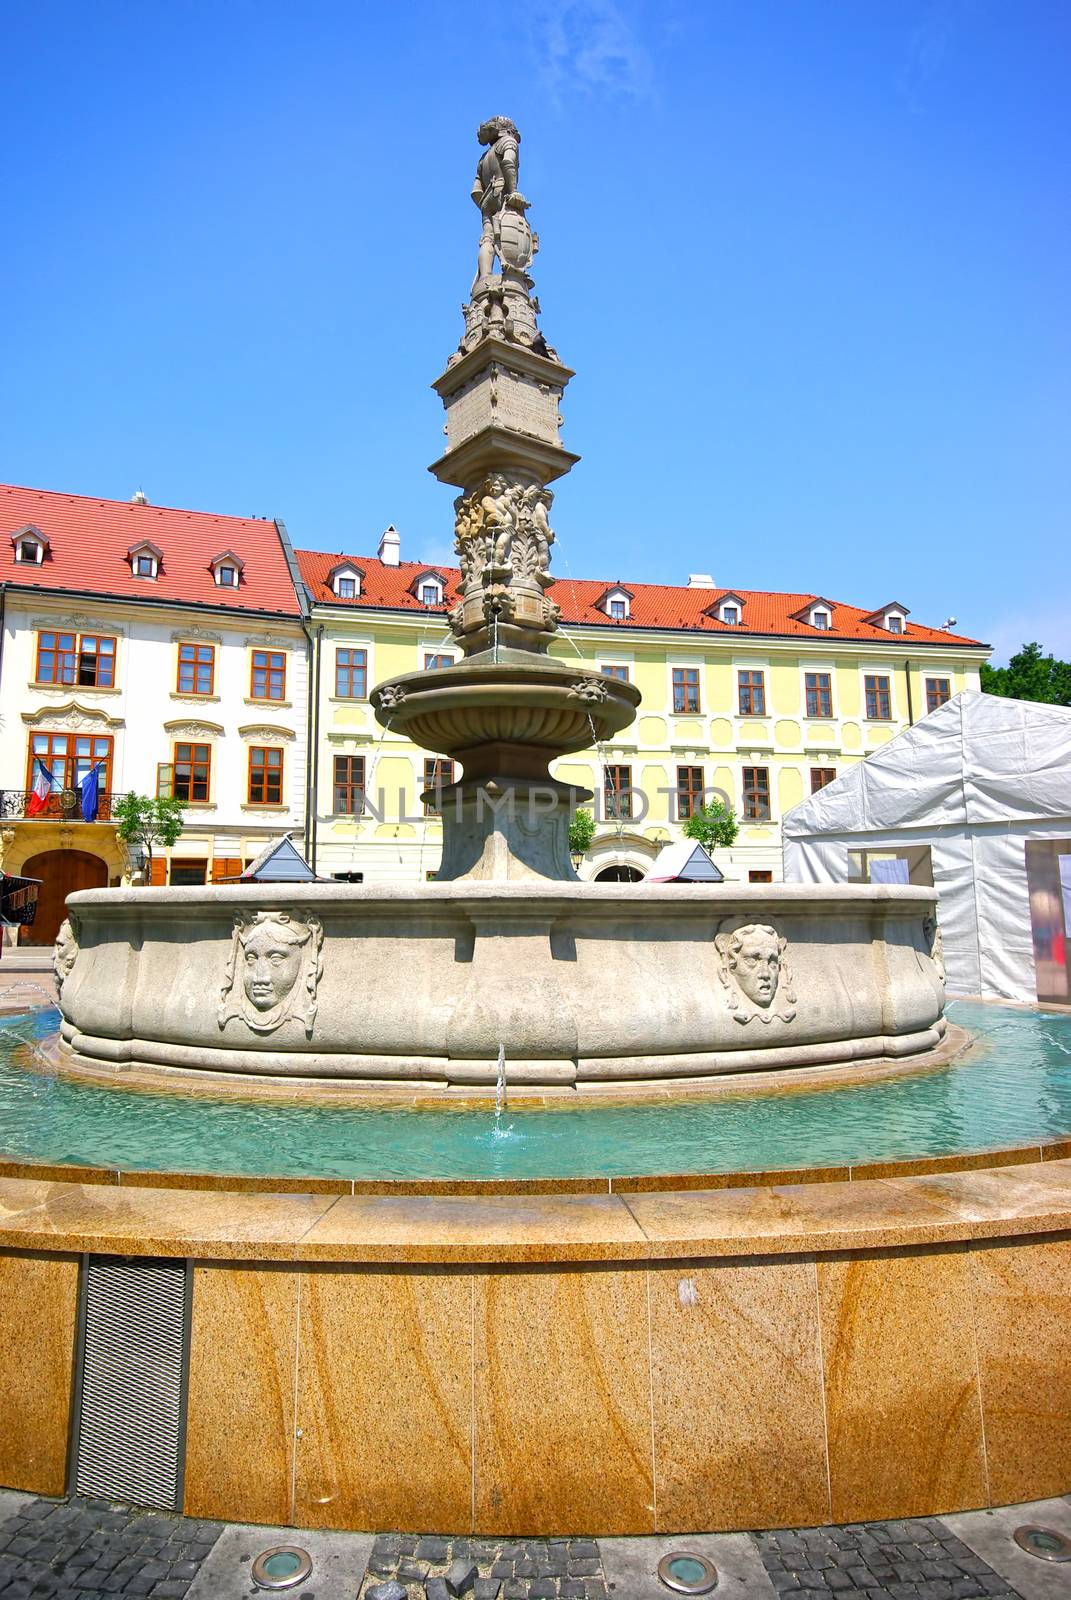 City square fountain in Bratislava by savcoco